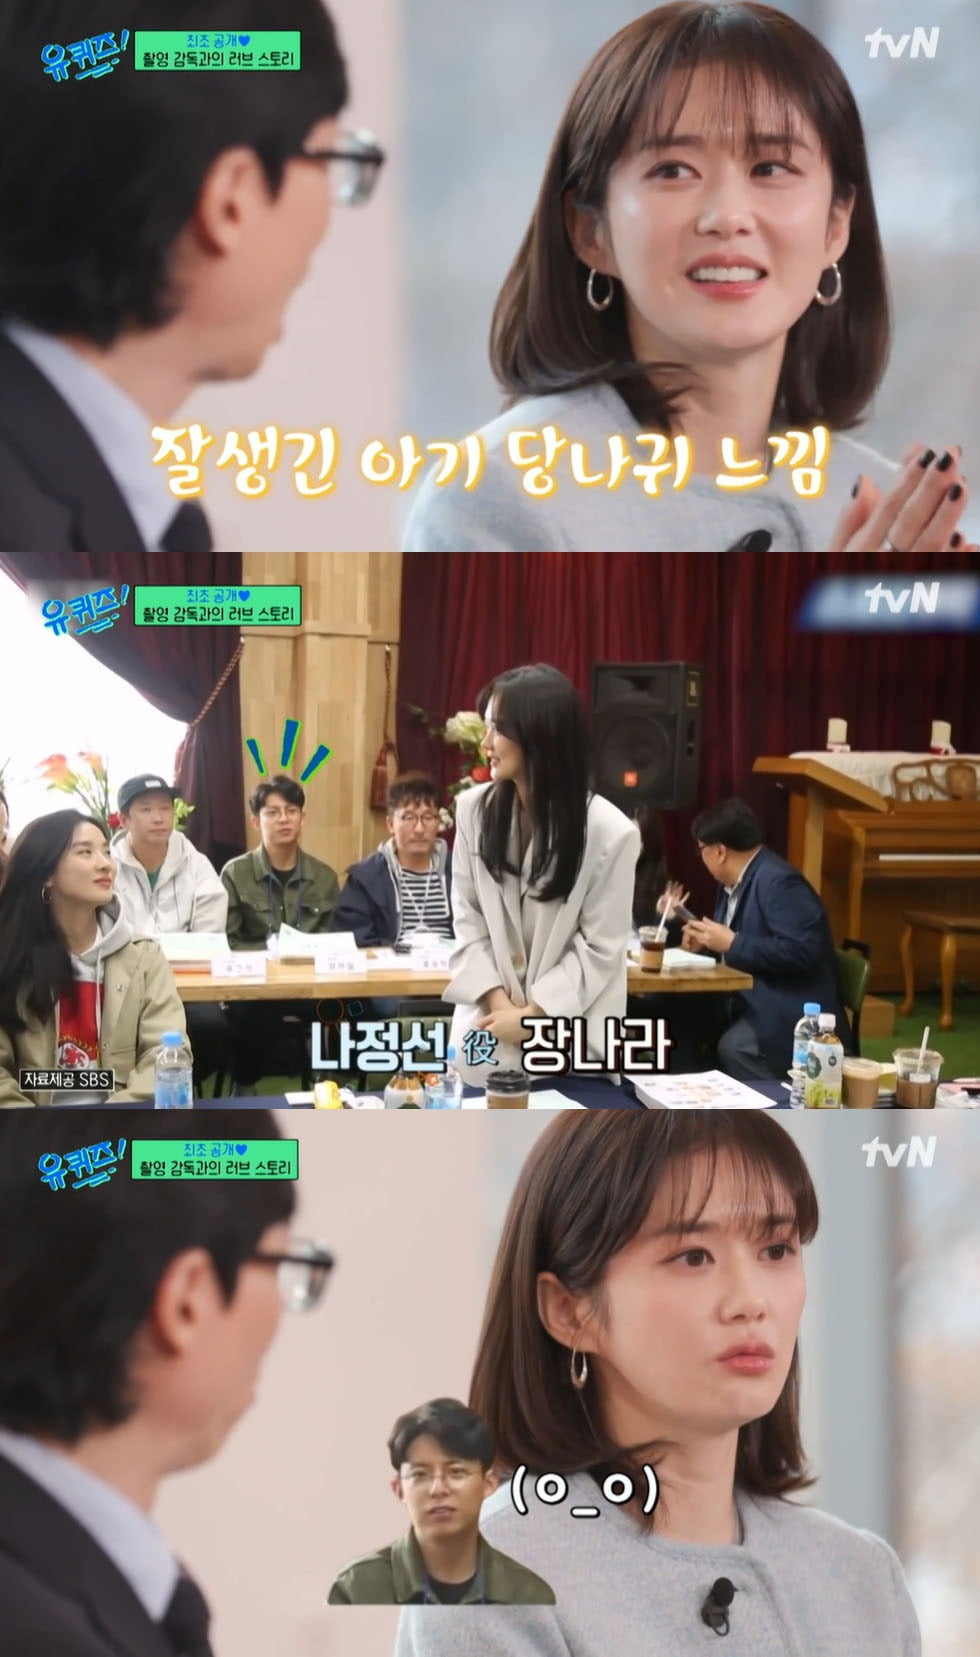 Kim Bo-ra, Jang Na-ra, and Jeon Jong-seo "I also had a love affair with the director on set."